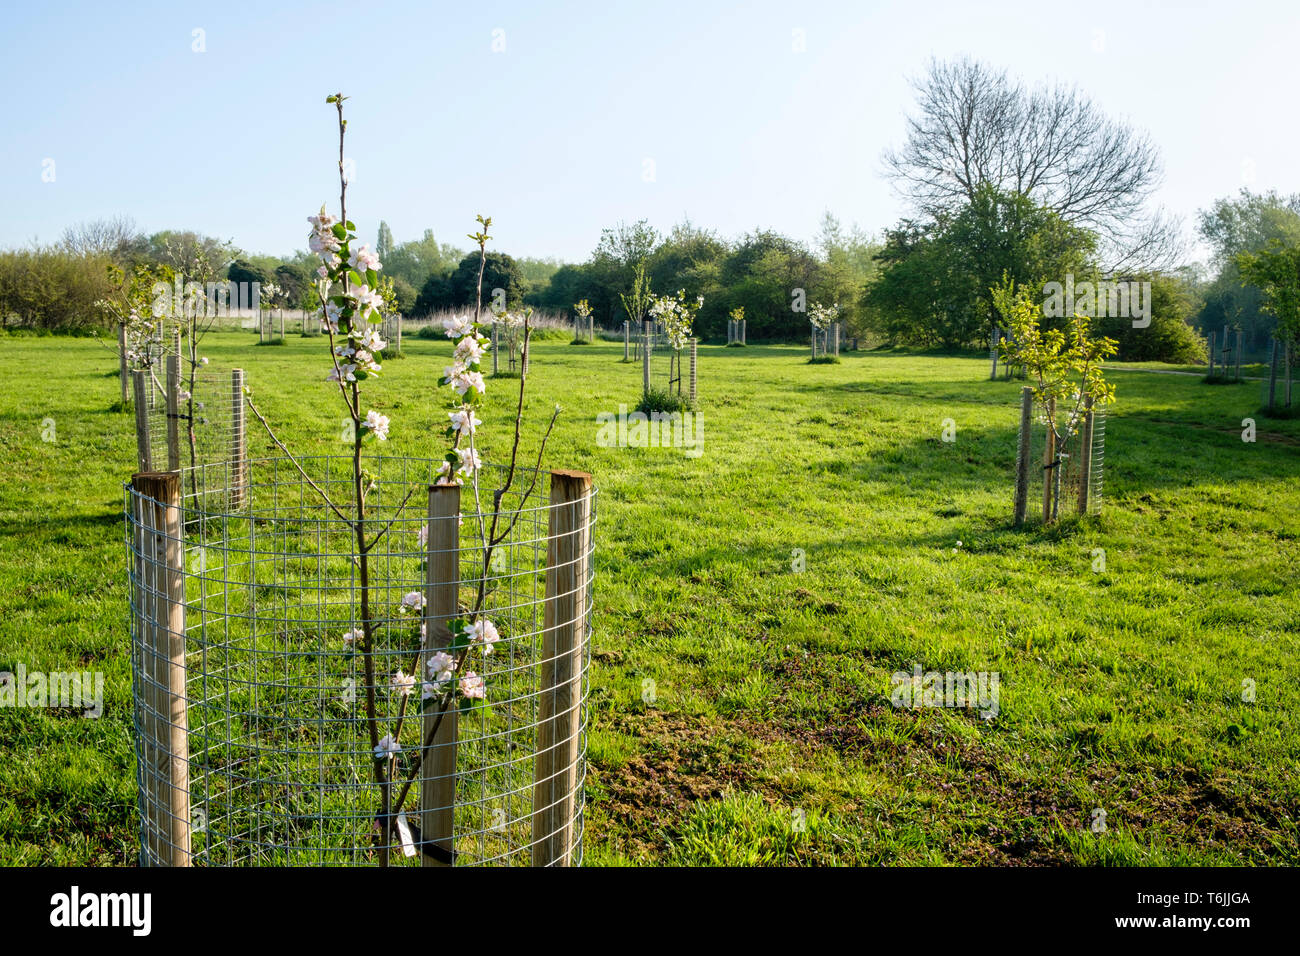 Un pommier pousse dans un champ avec de divers autres jeunes arbres récemment plantés, le tout entouré par des gardiens de l'arbre. Nottinghamshire, Angleterre, RU Banque D'Images